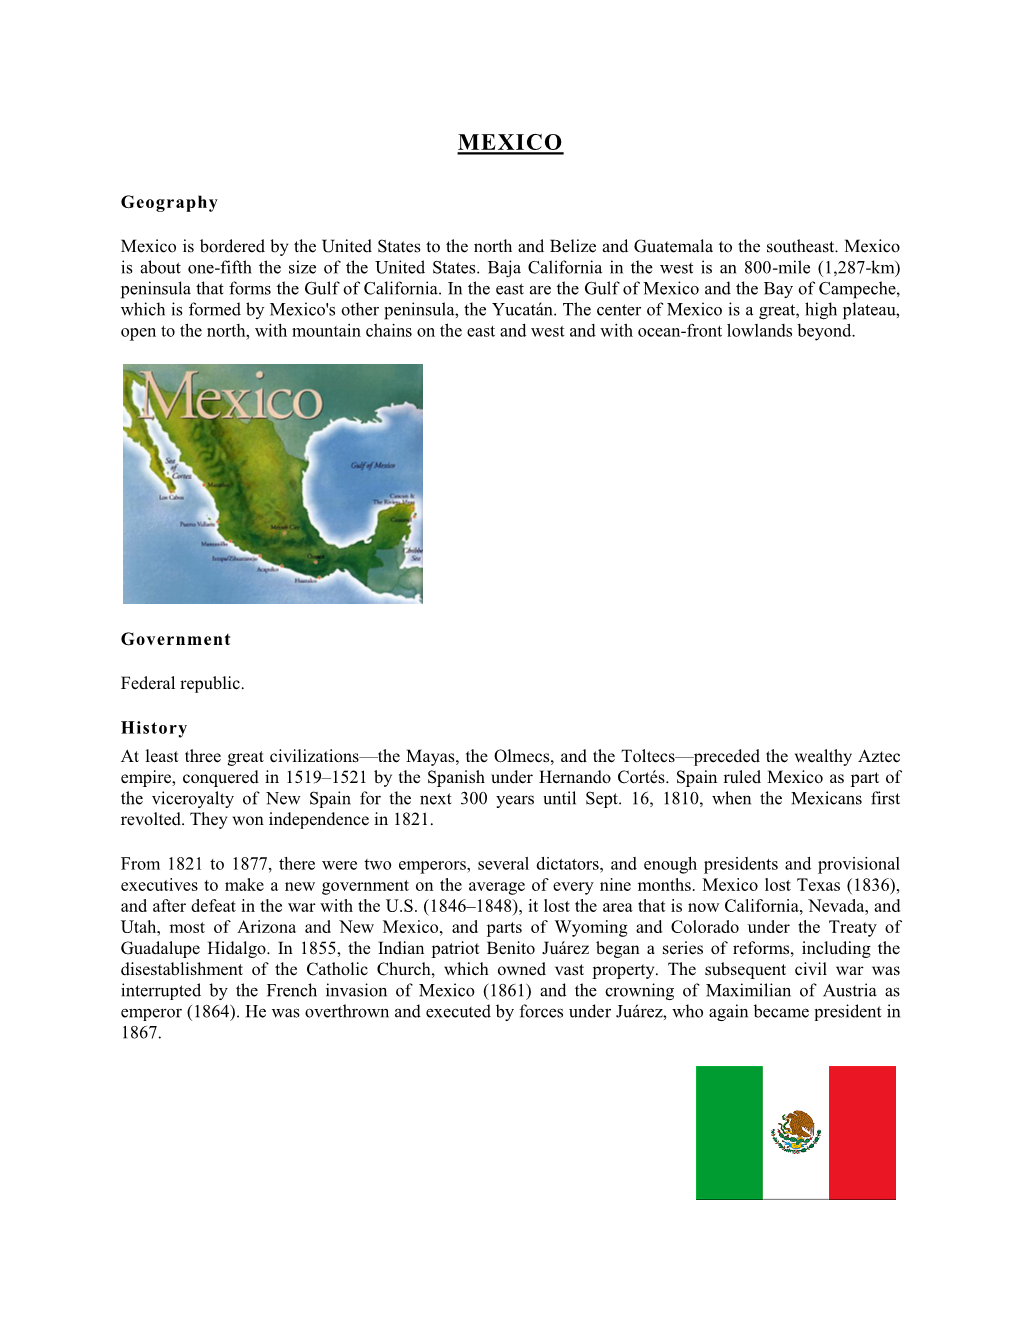 Mexico Fact Sheet